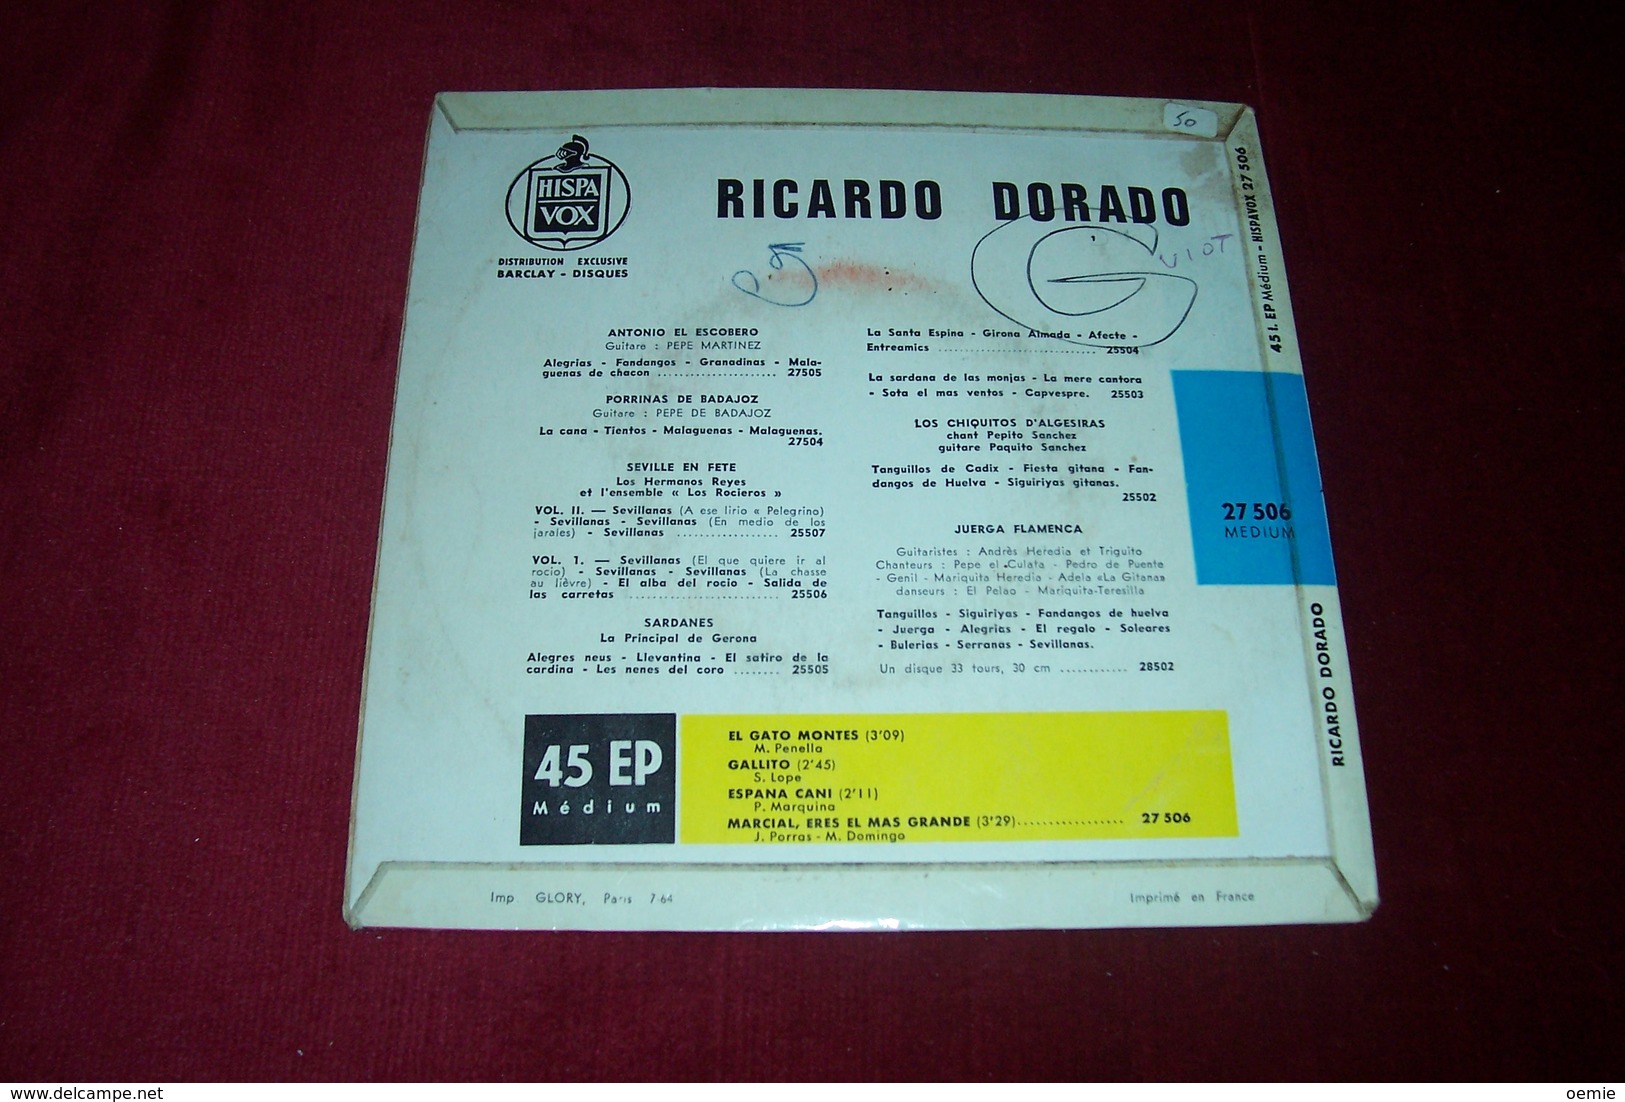 lot de 7 / 45 TOURS  disques de corrida  differents des annee 1960